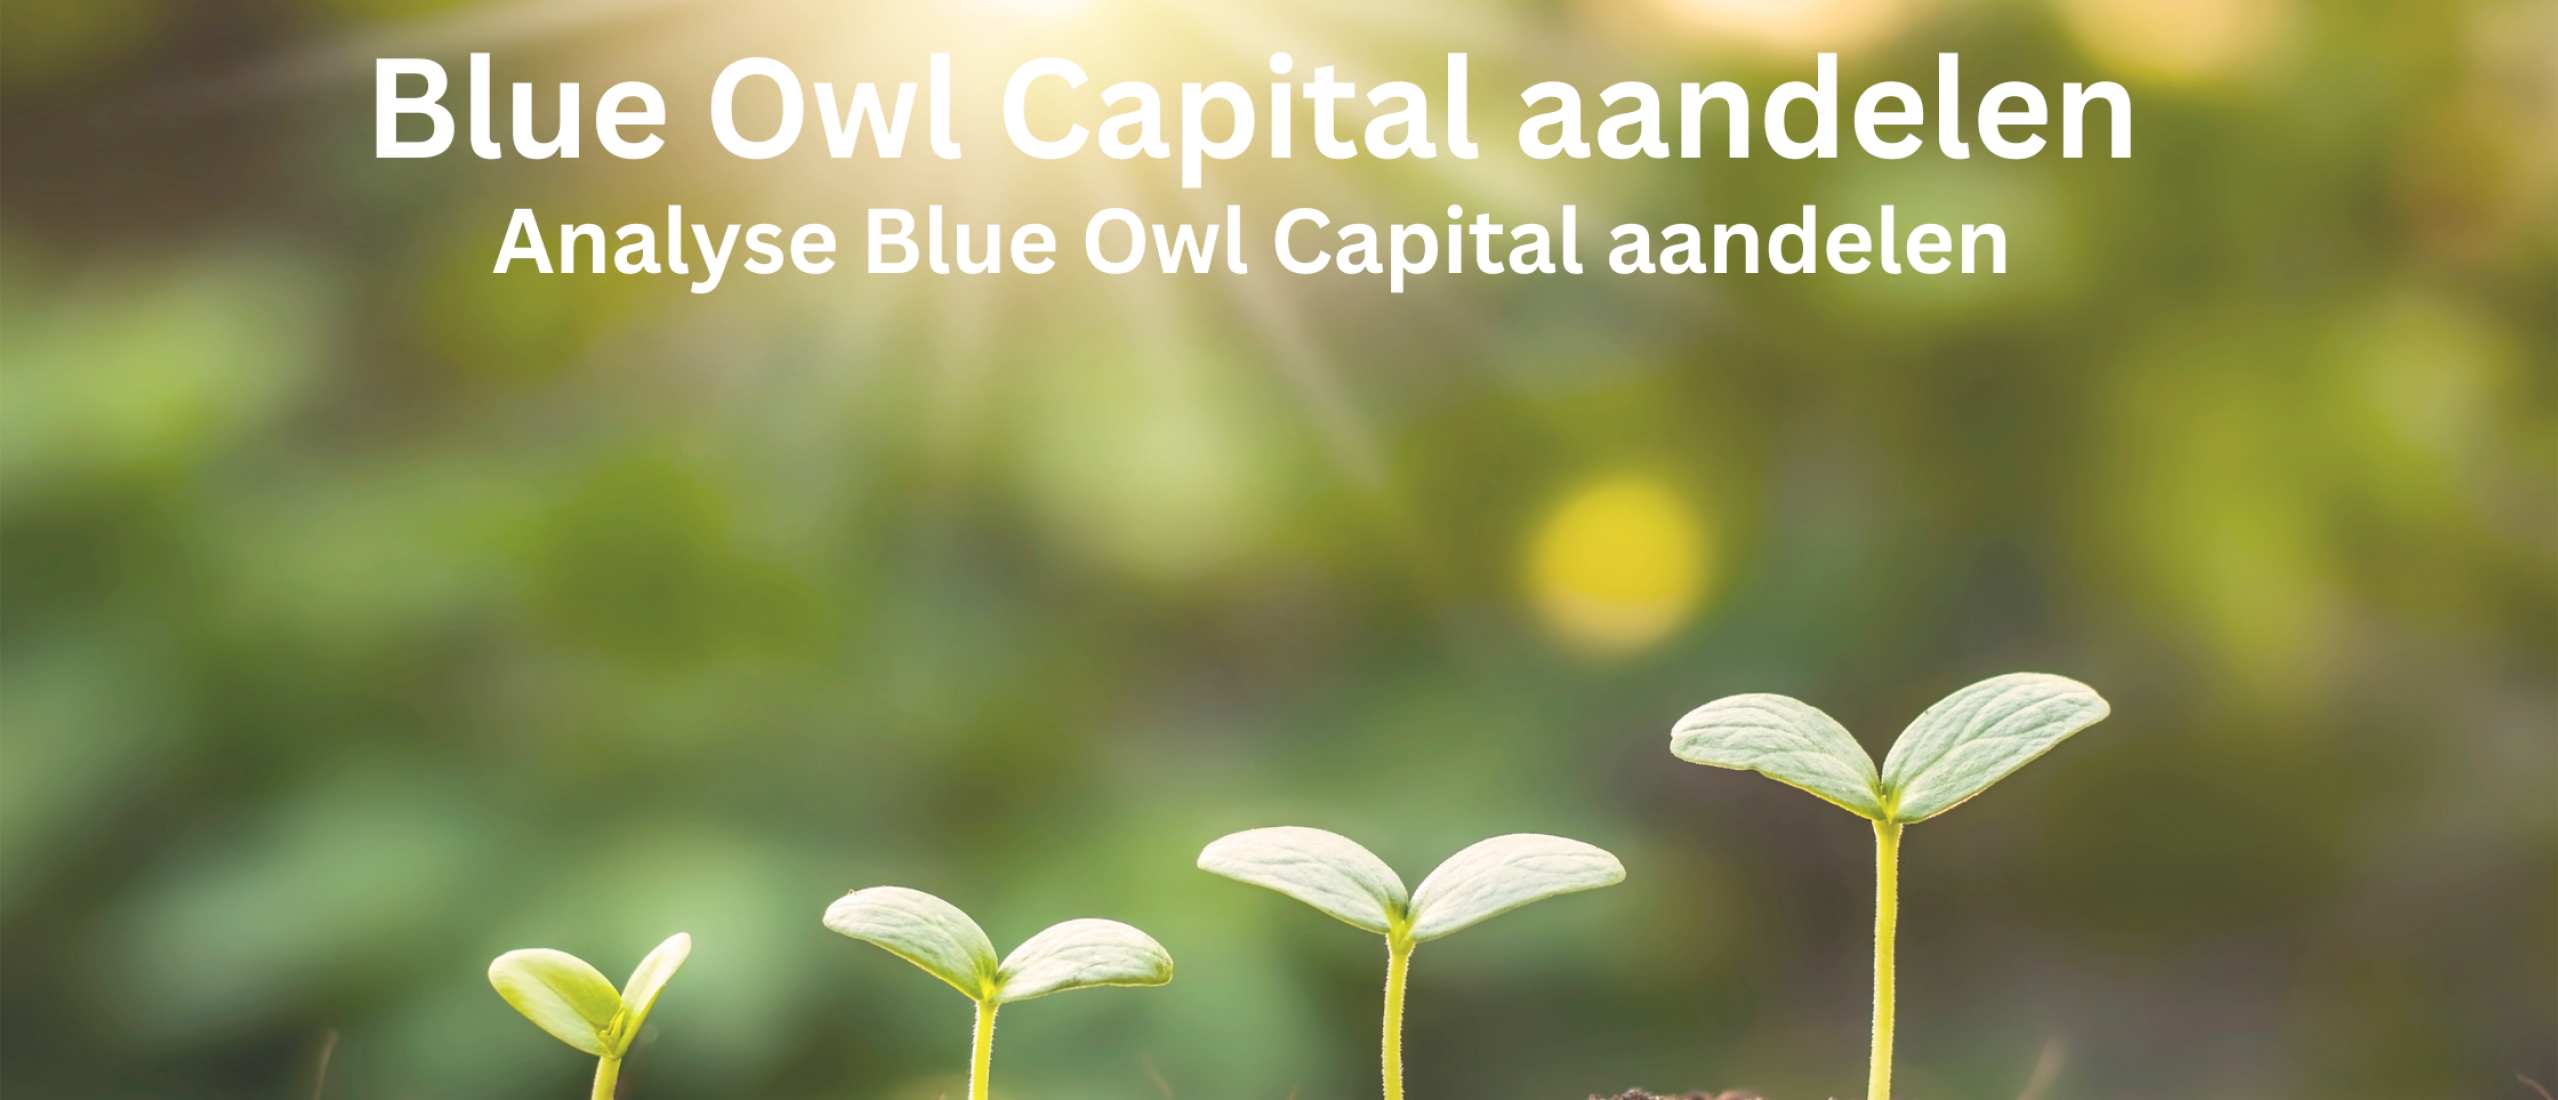 kopen-aandelen-blue-owl-capital-aandelen